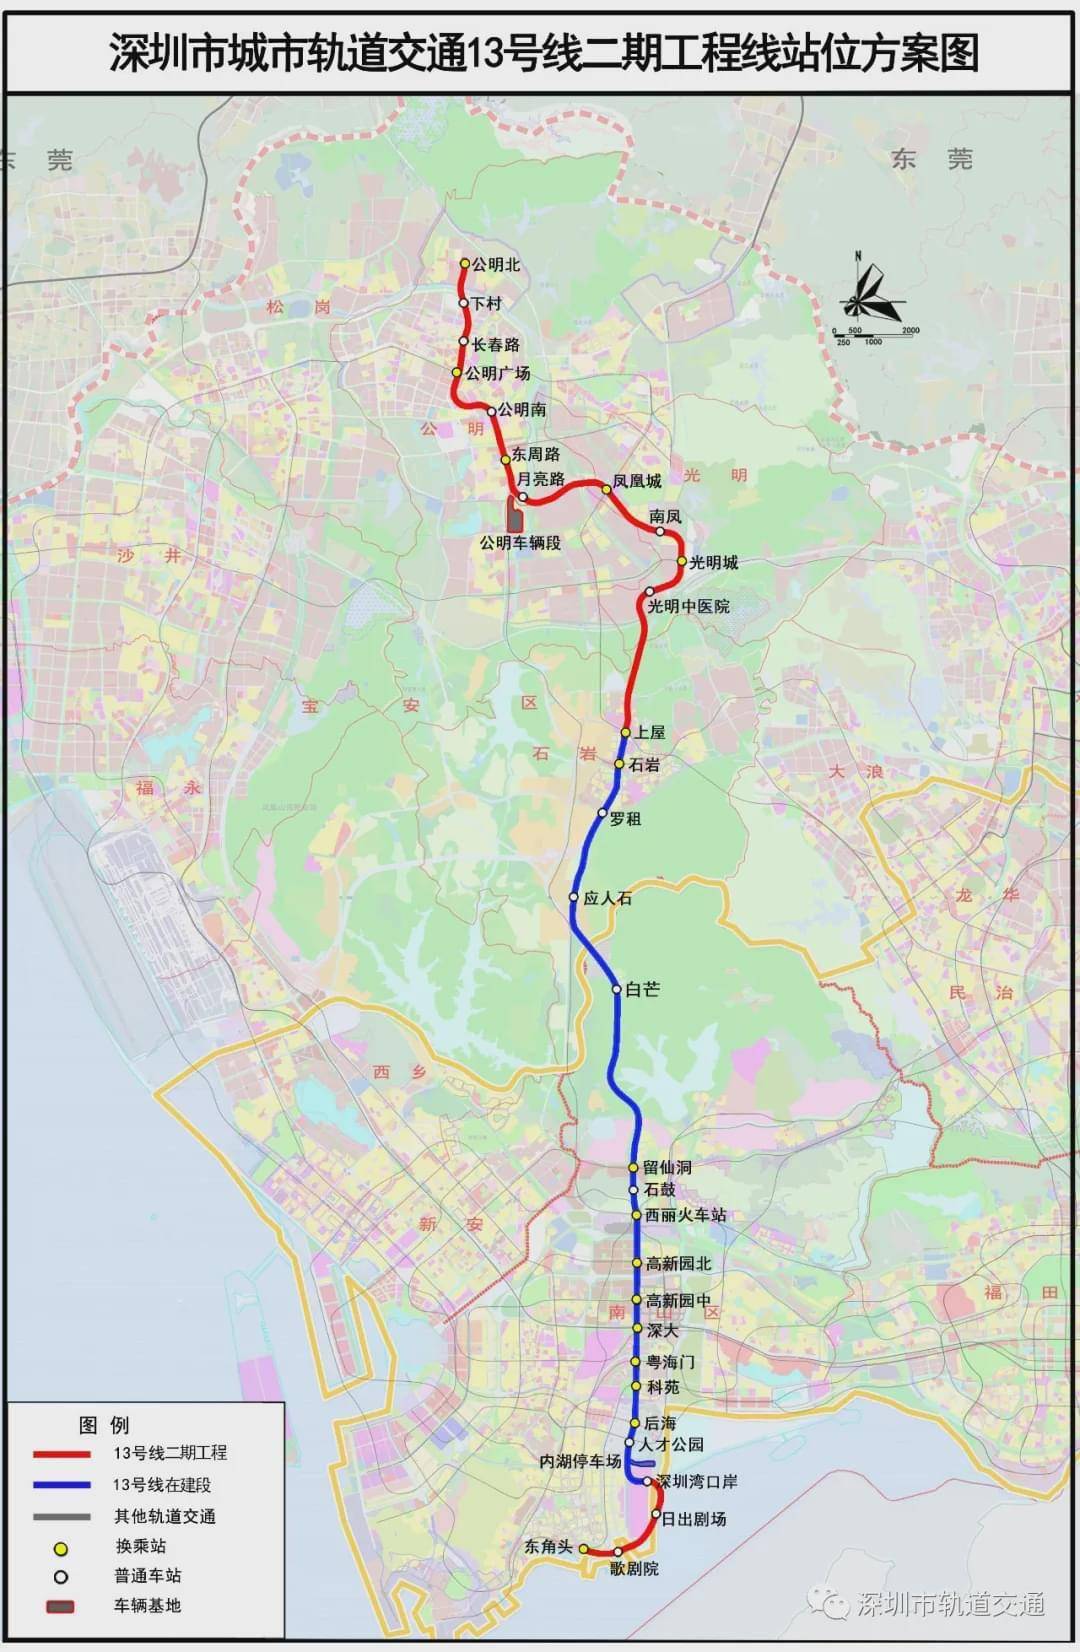 深圳地铁13号线公明段土整补偿方案公布,签约11月完成